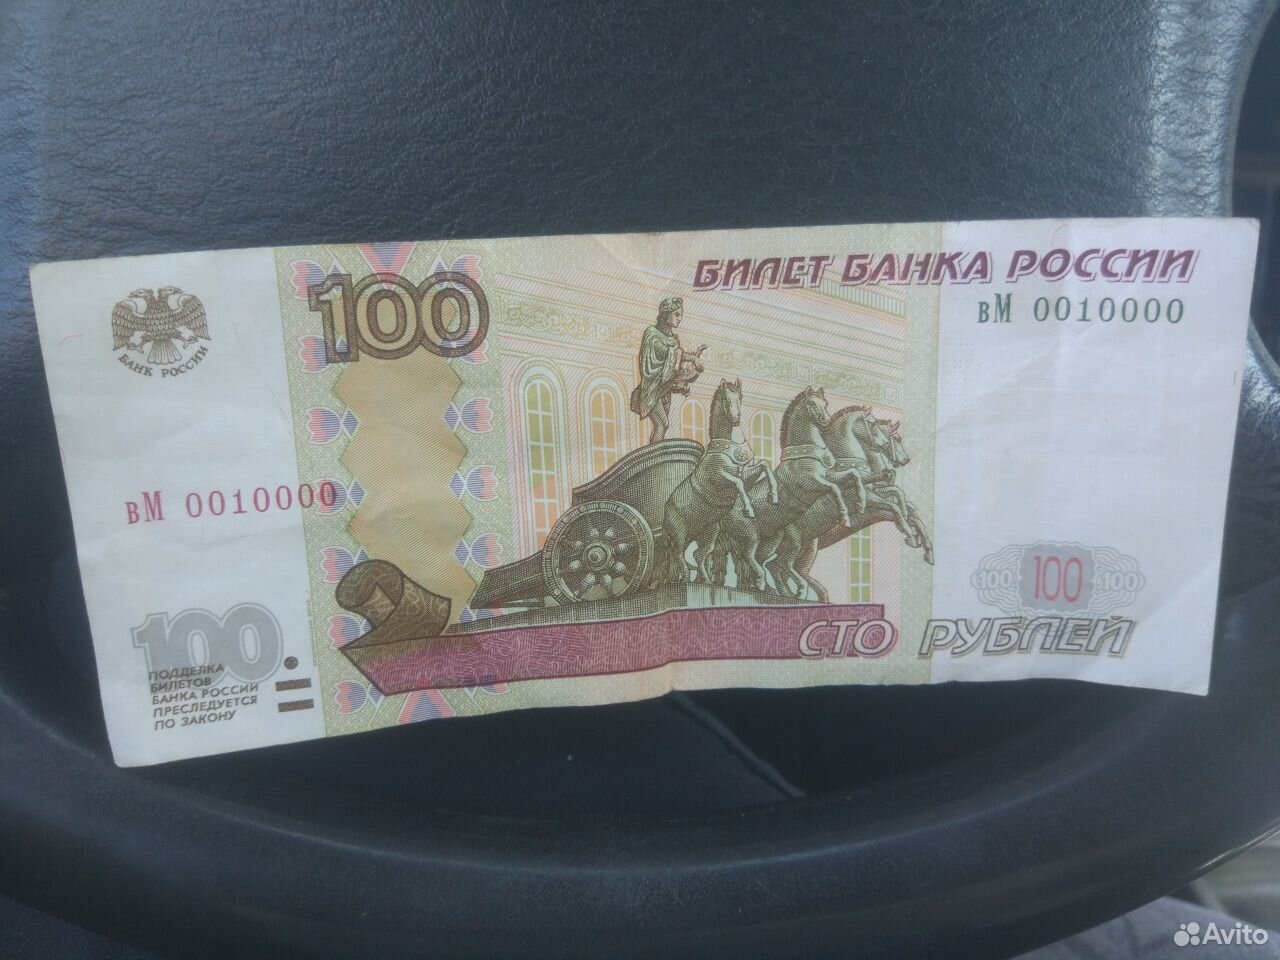 500 рублей потратили 200